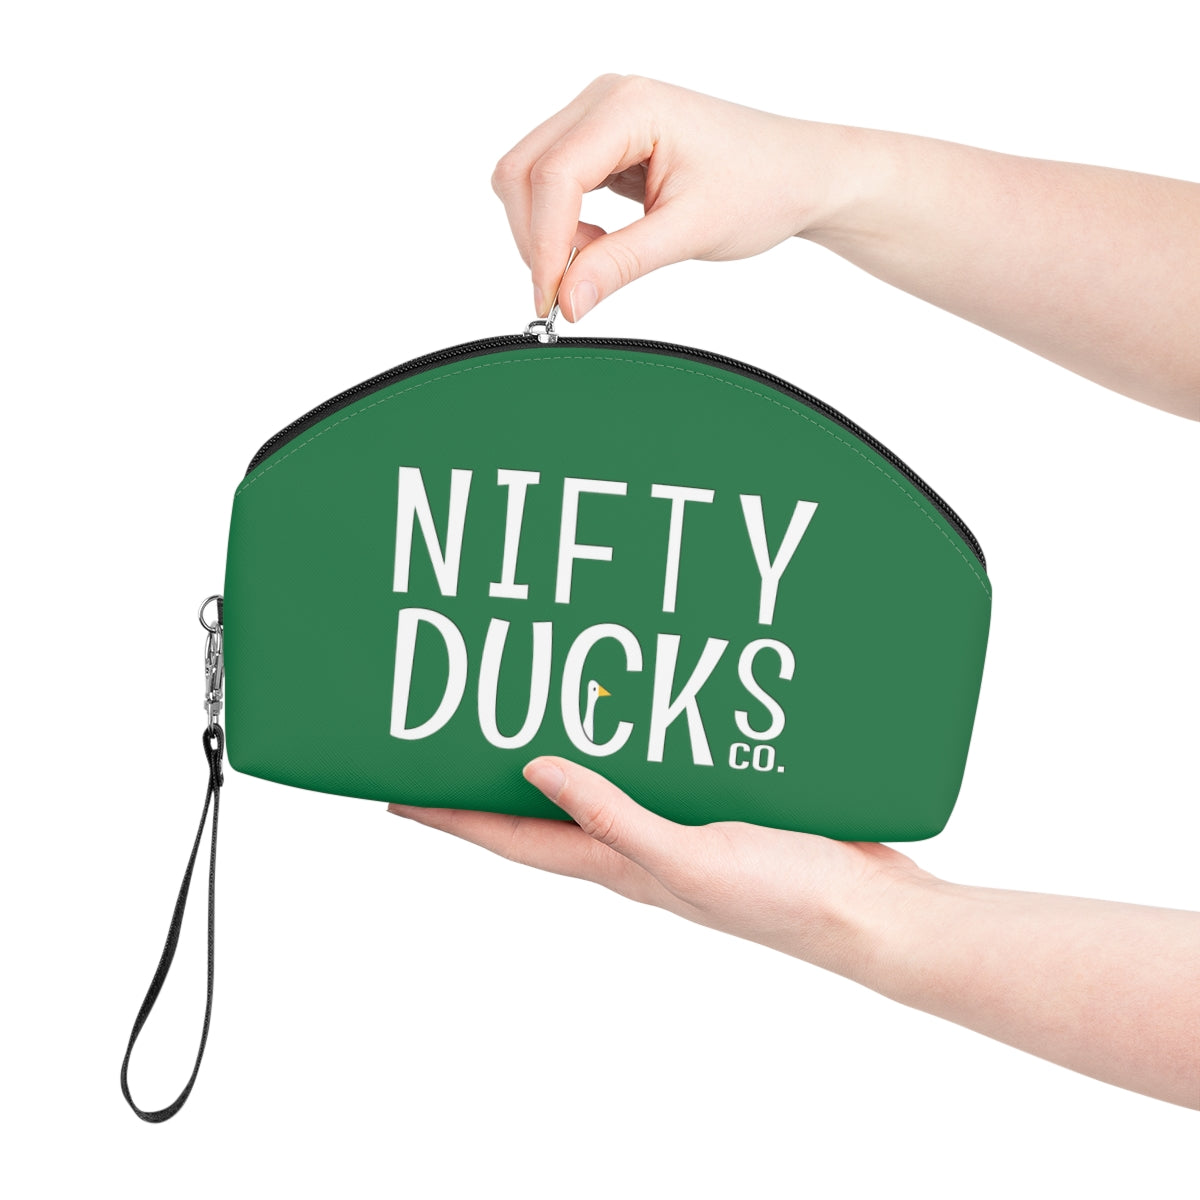 Copy of Nifty Ducks Co. Logo2 - green - Makeup Bag